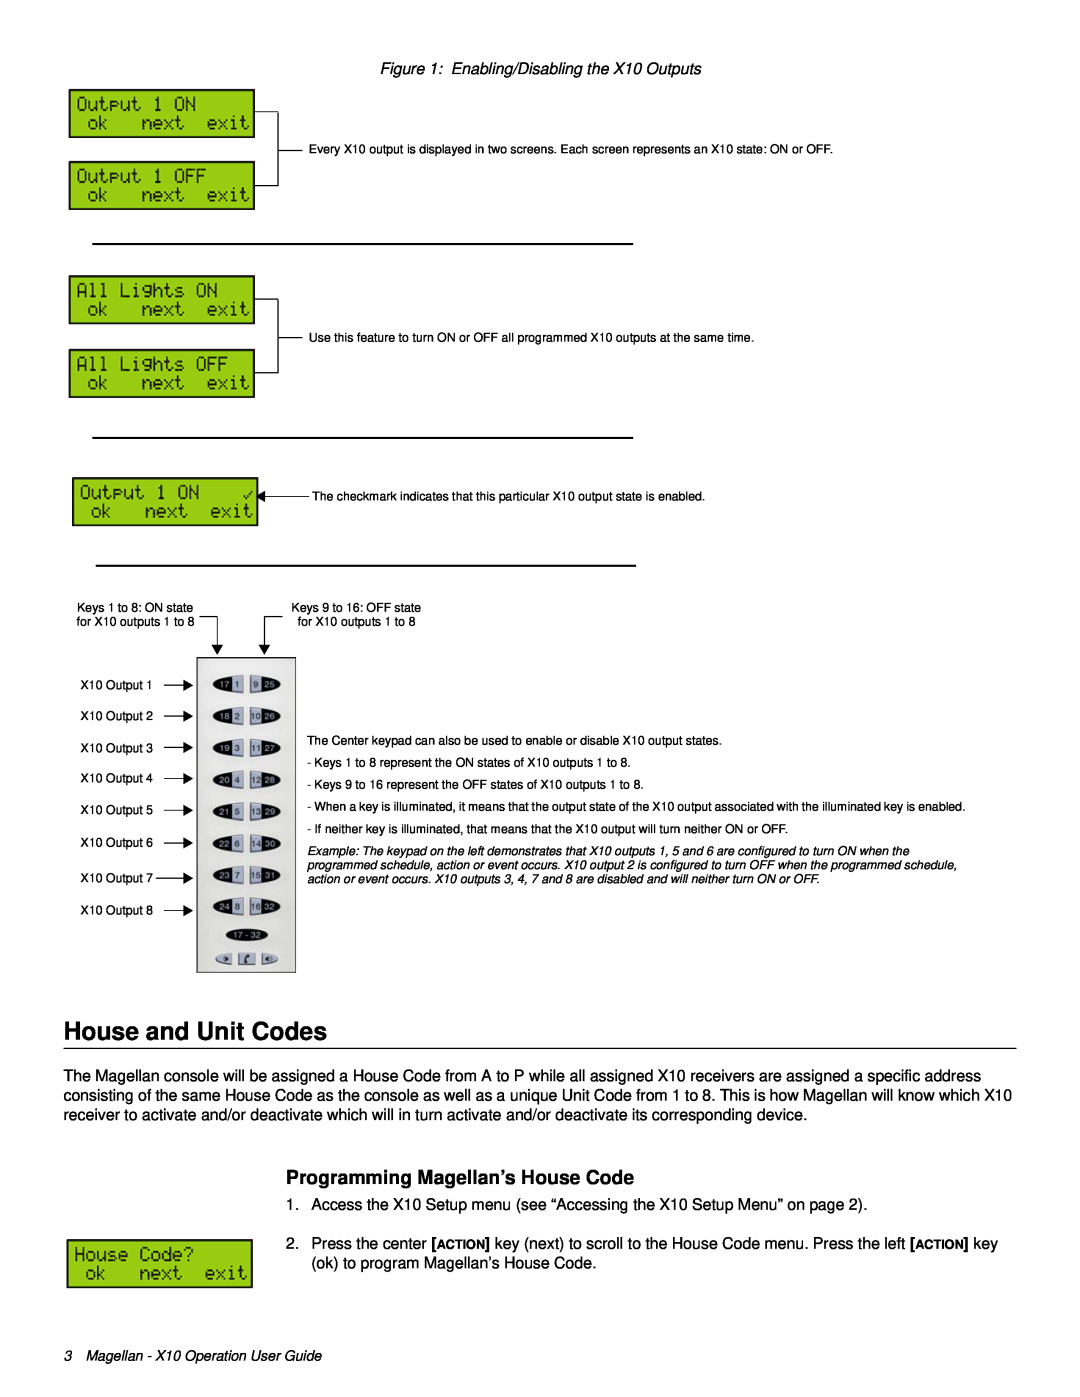 Magellan MG-6160 manual House and Unit Codes, Programming Magellan’s House Code 